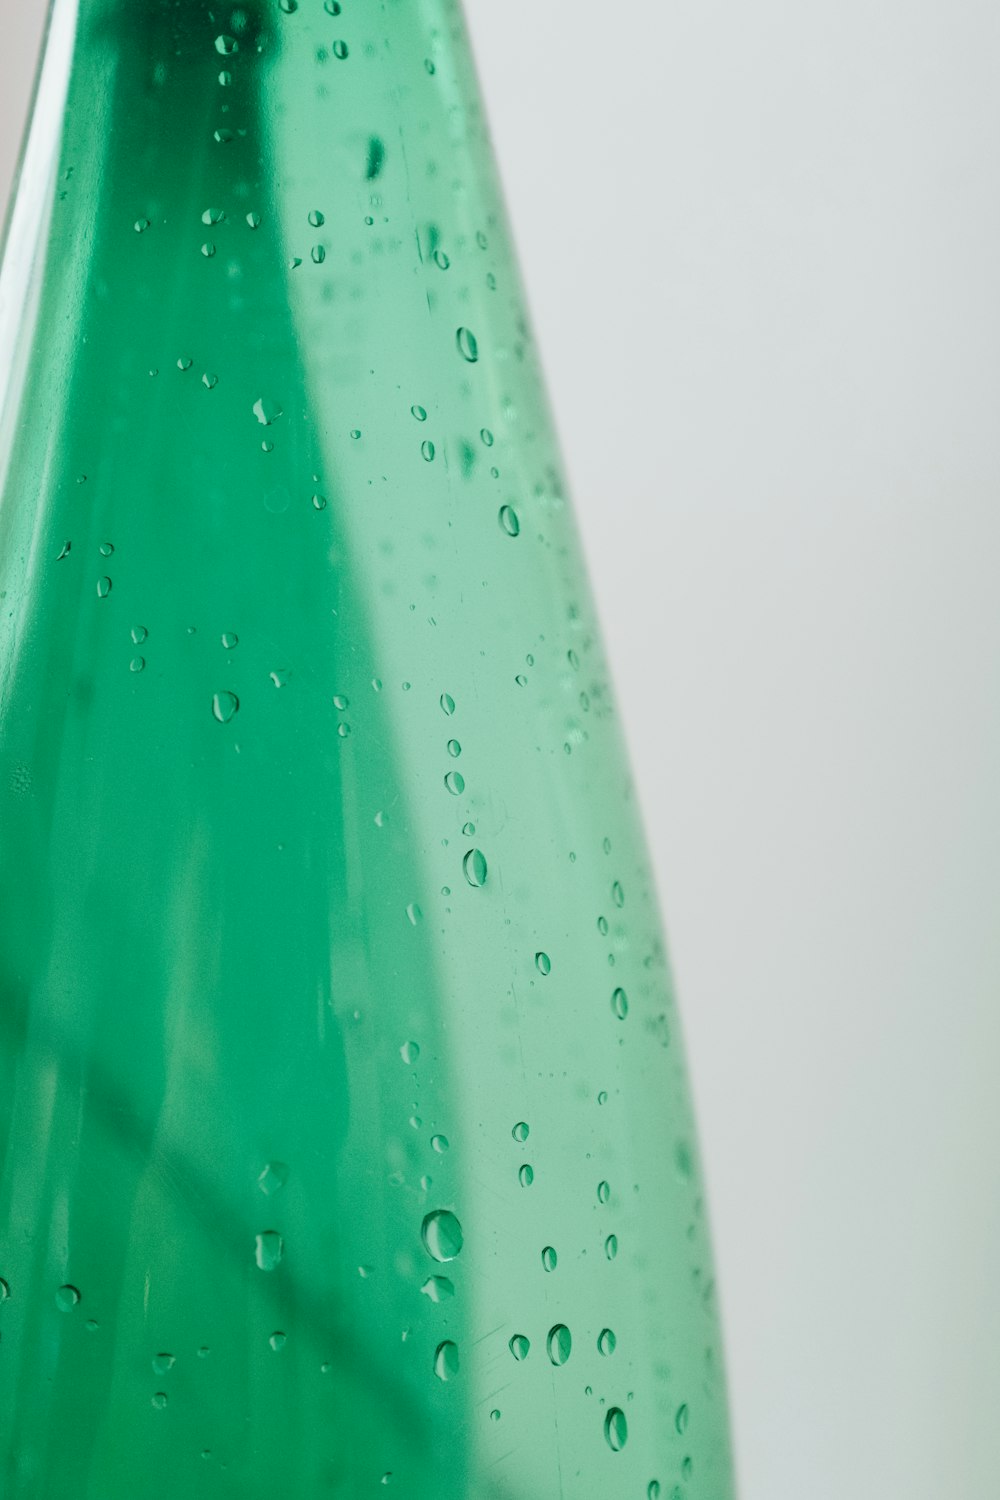 水滴の入った緑色のペットボトル